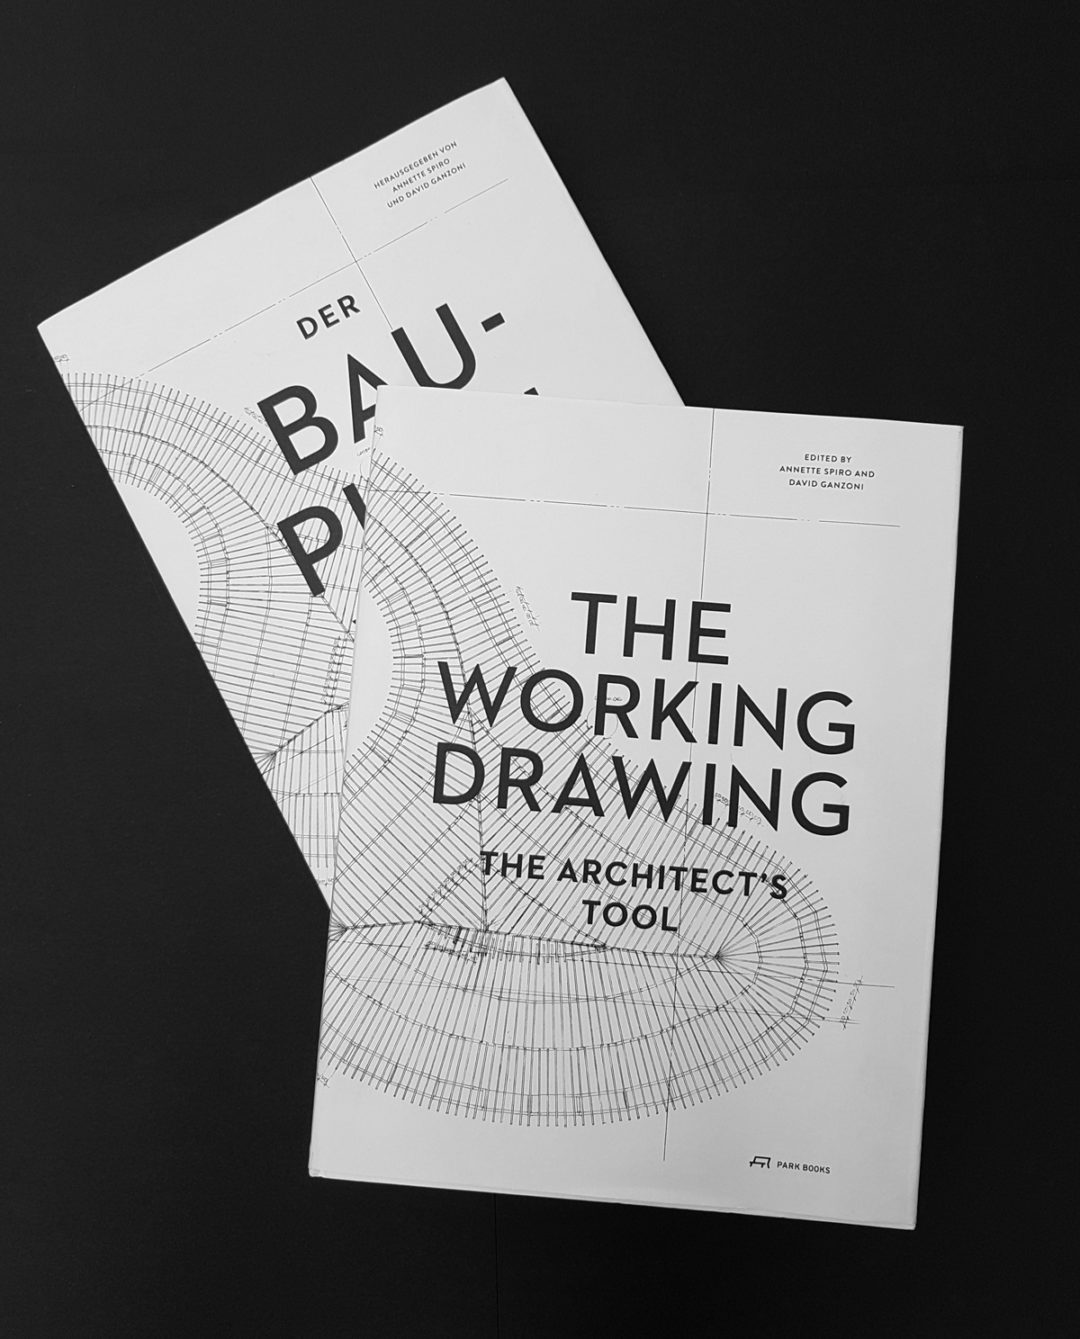 Der Bauplan. Das Werkzeug des Architekten / The Working Drawing. The Architect’s Tool